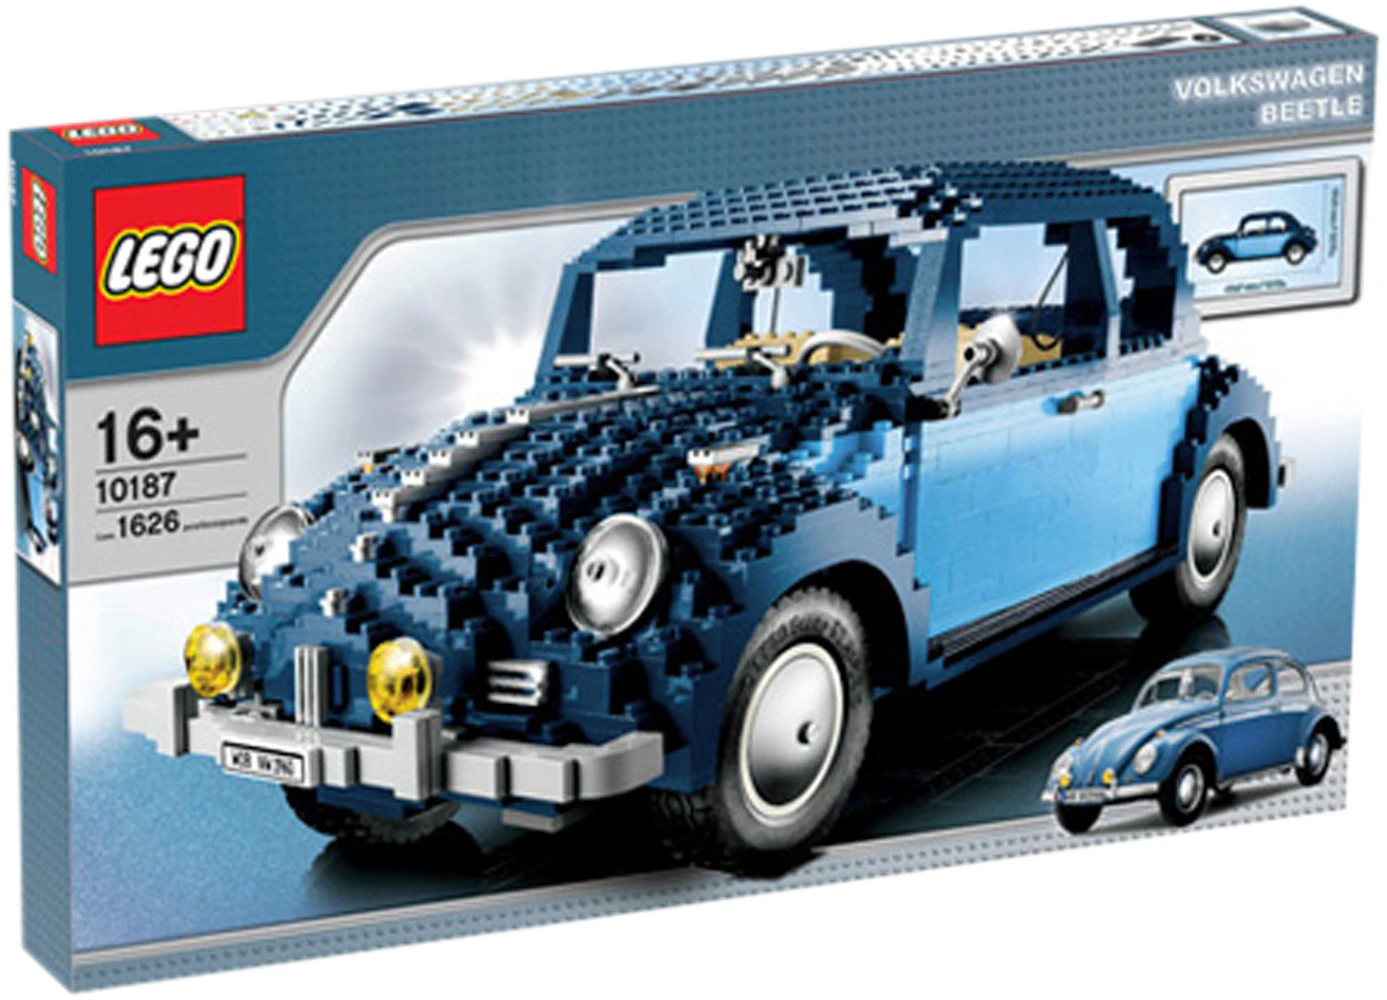 LEGO Creator Expert Volkswagen Beetle Set 10187 US